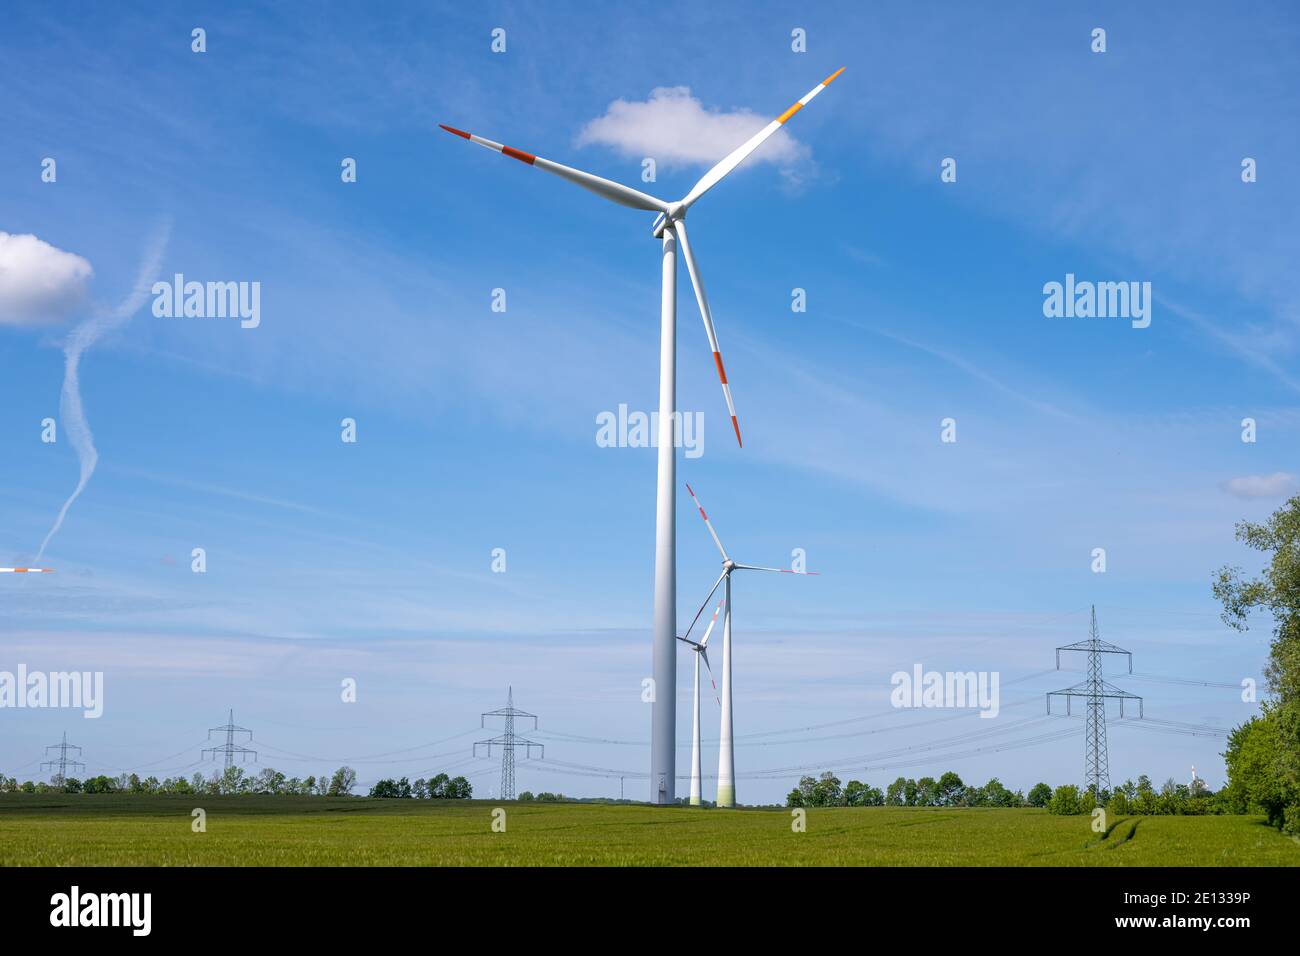 Ruote a vento e linee elettriche viste in un'area rurale in Germania Foto Stock